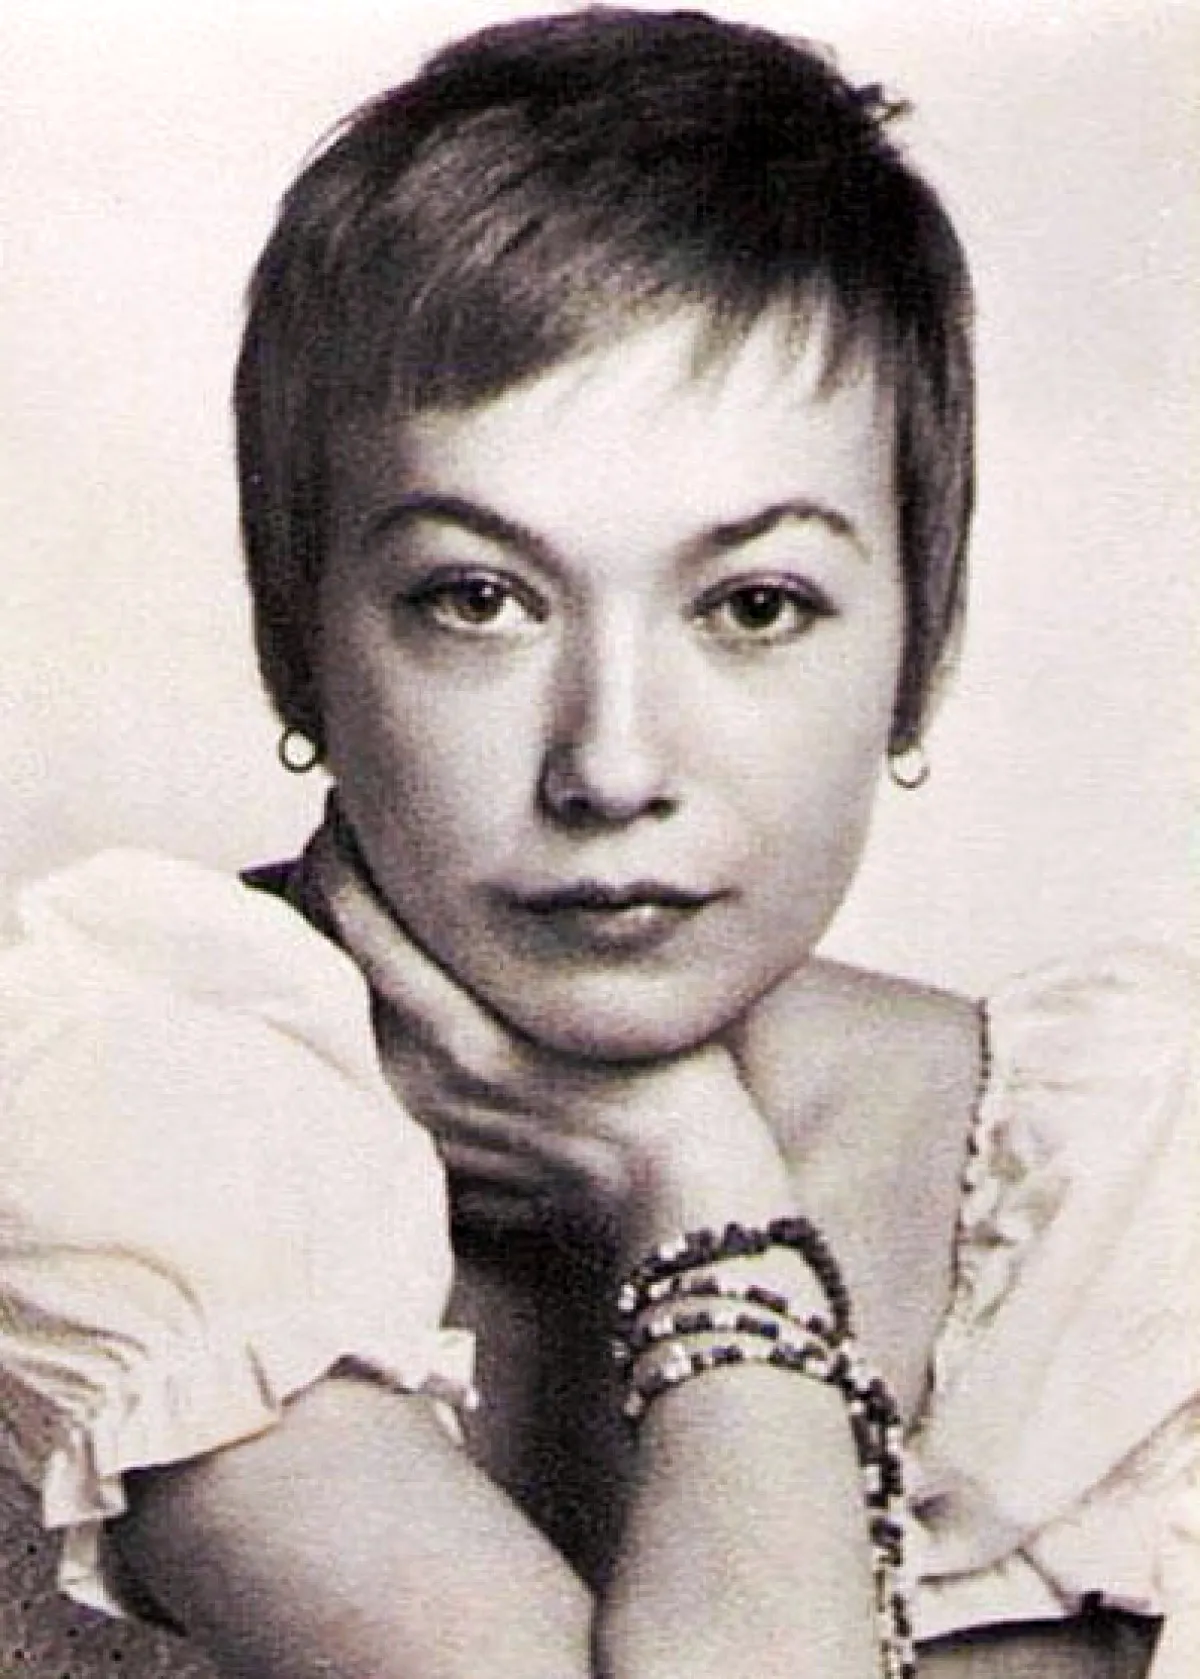 Елена Коренева